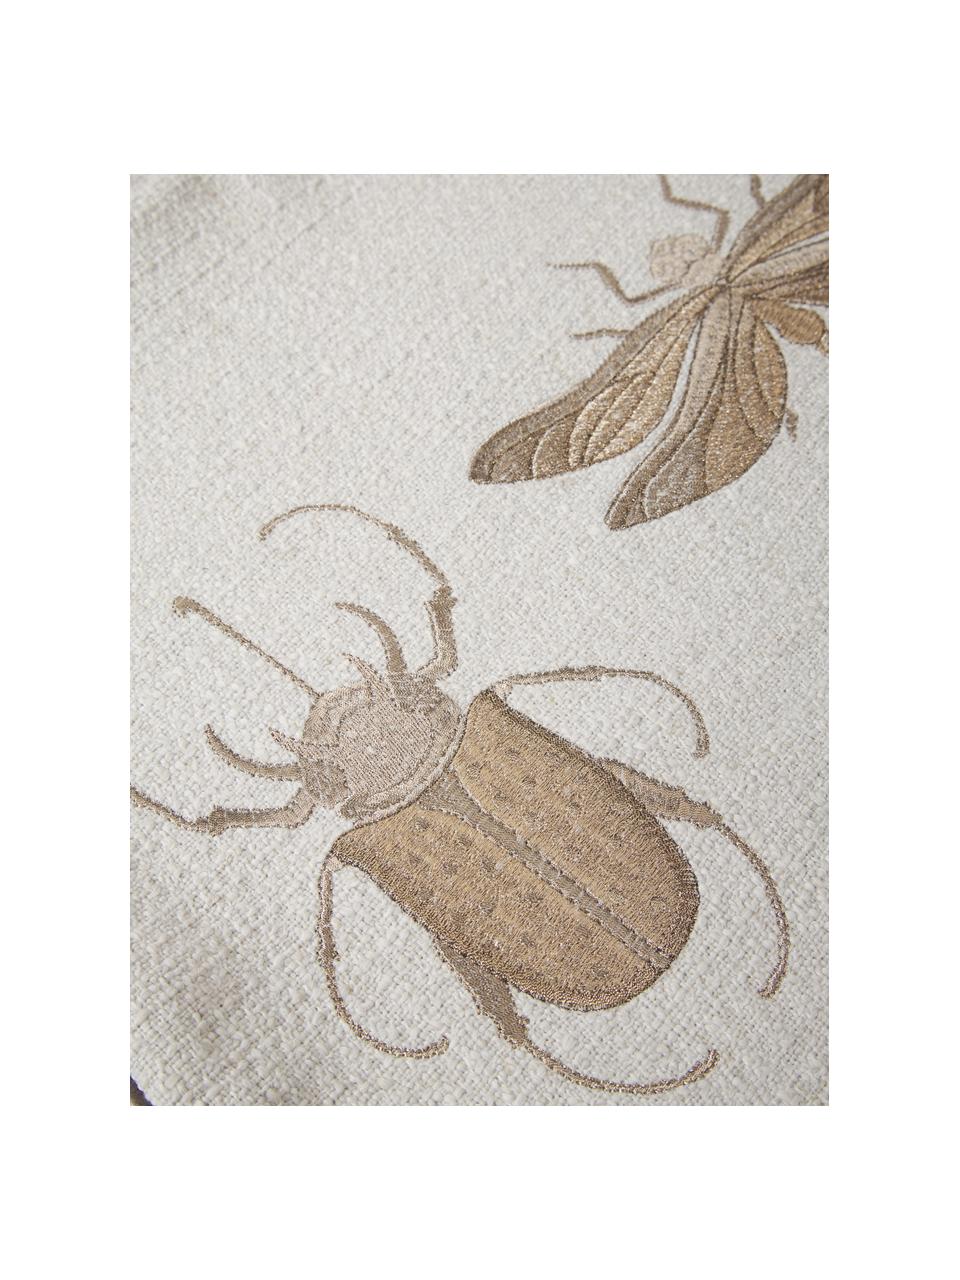 Vyšívaný povlak na polštář s motivem hmyzu Tania, 90% polyester, 10% len
Certifikát Oeko-Tex Standard 100, třída 1, Béžová, Š 45 cm, D 45 cm